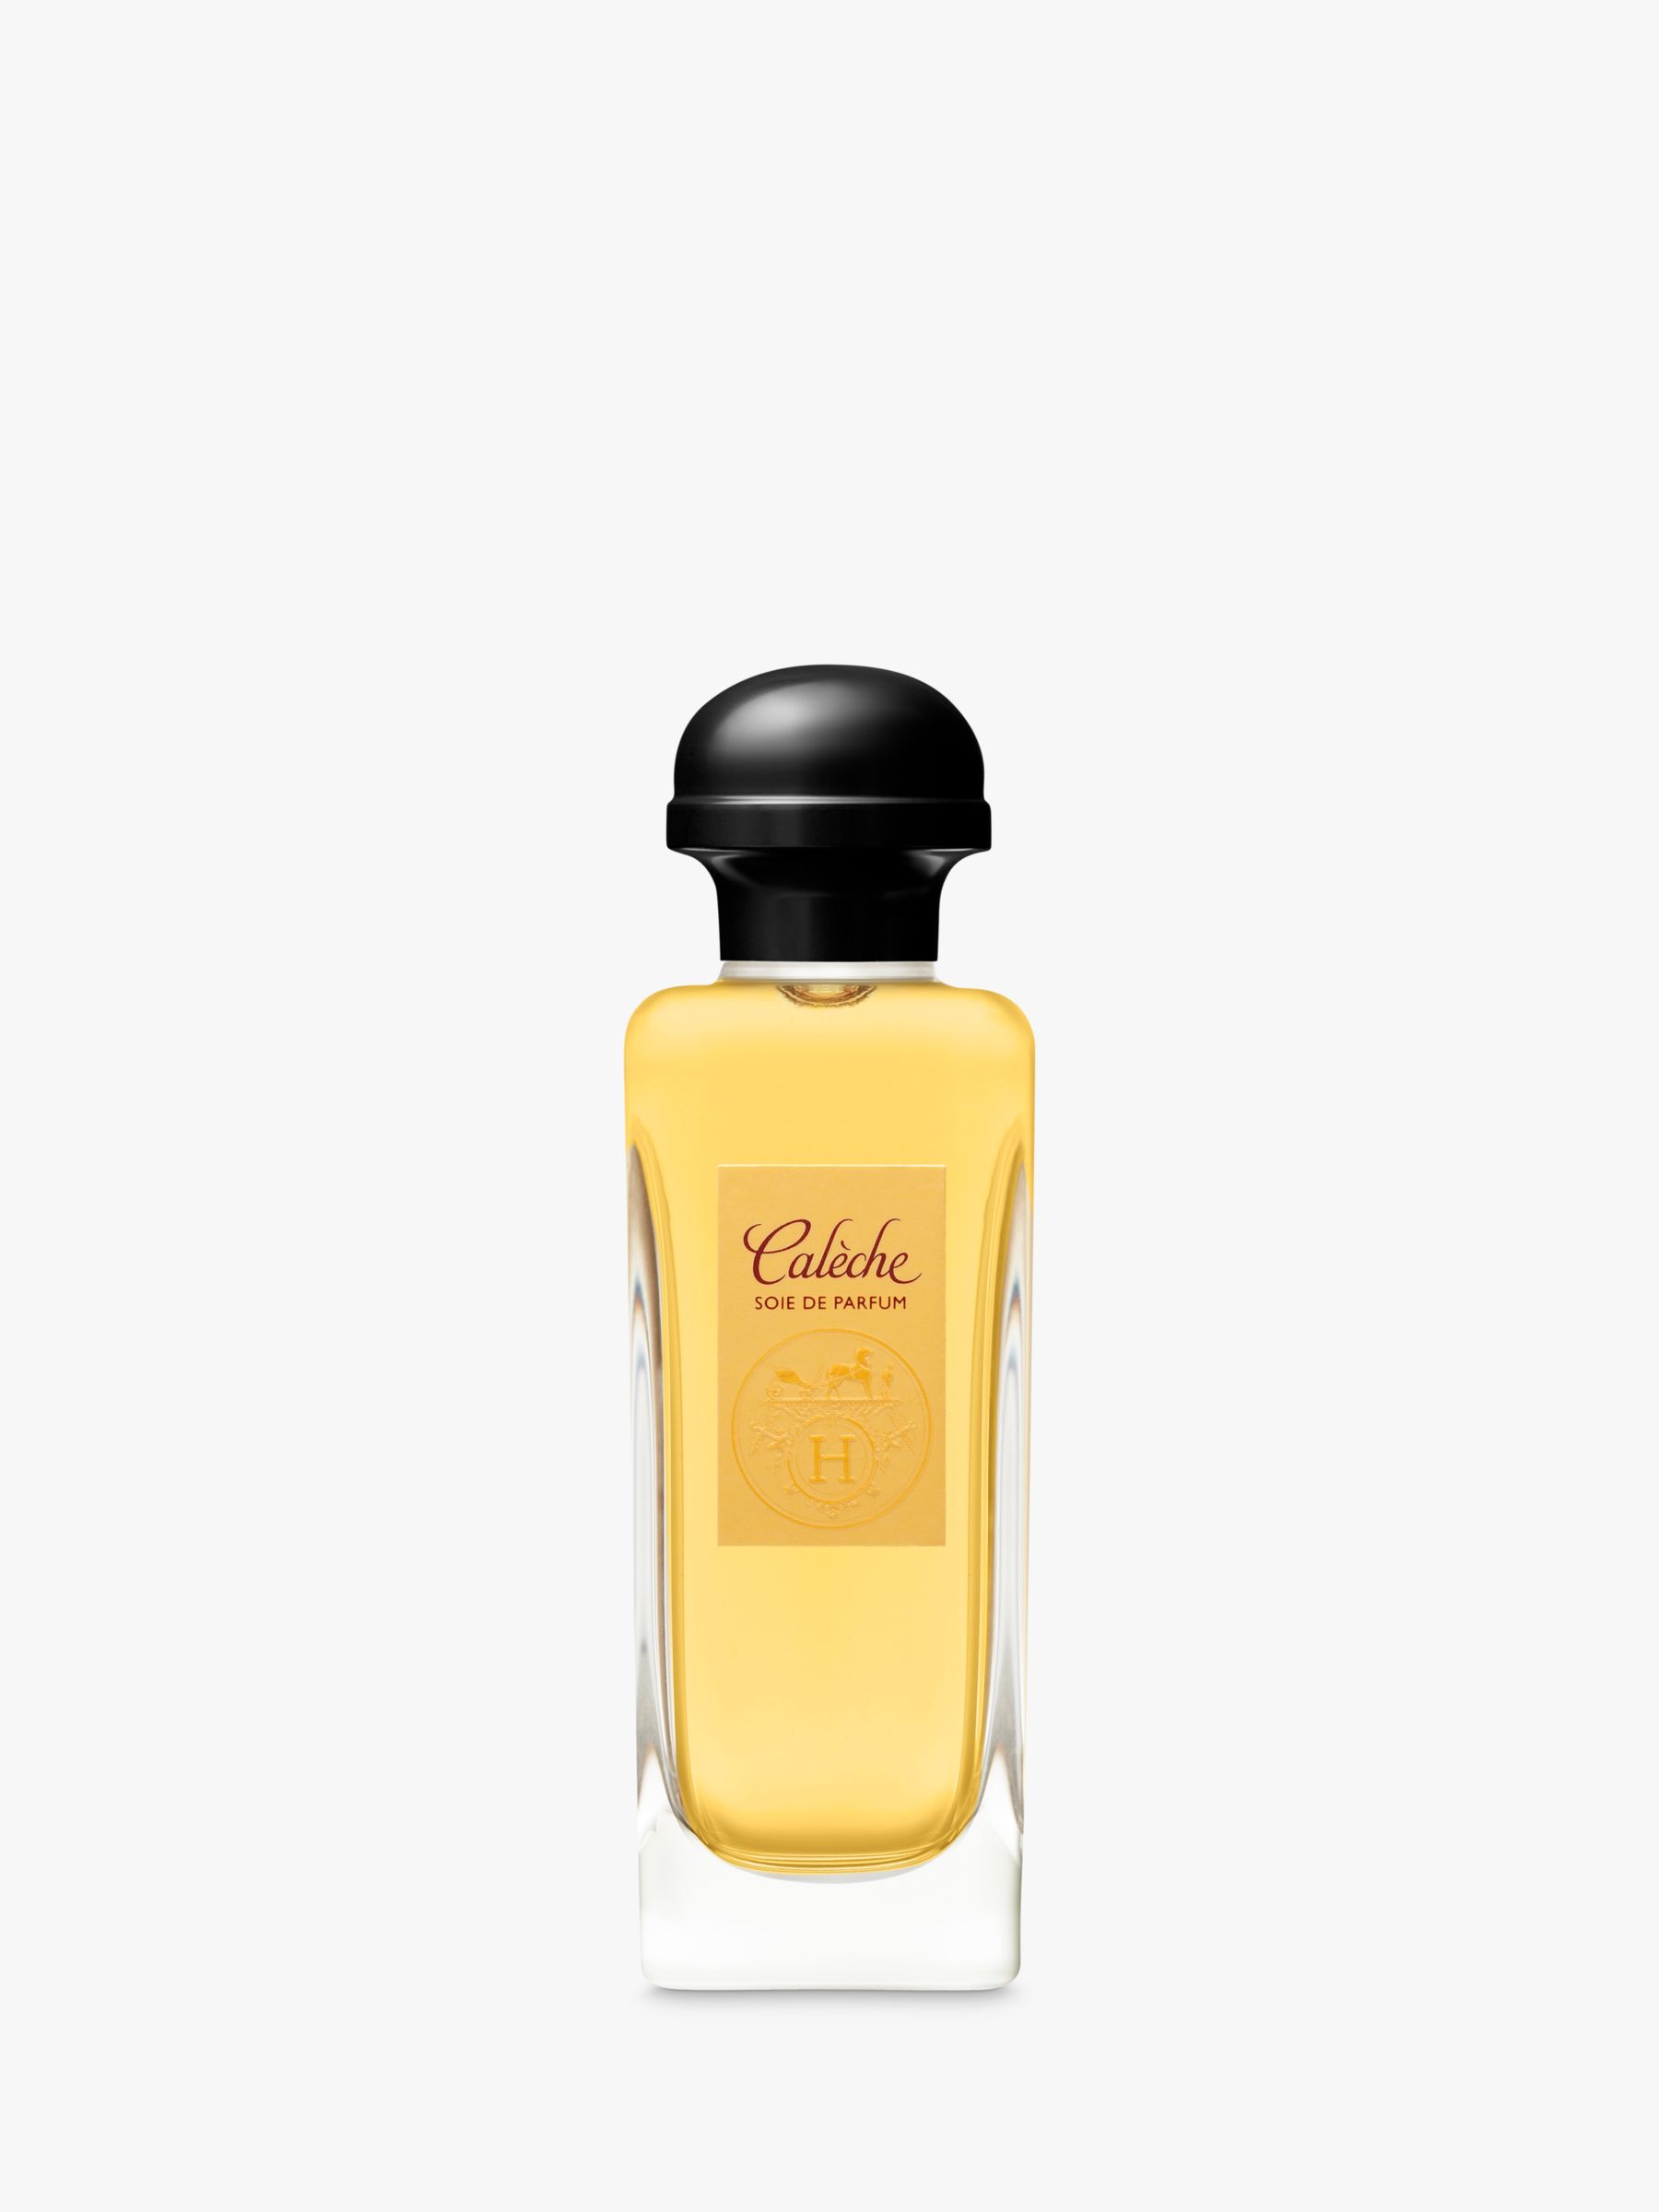 Hermès Calèche Soie de Parfum Eau de Parfum, 100ml 1